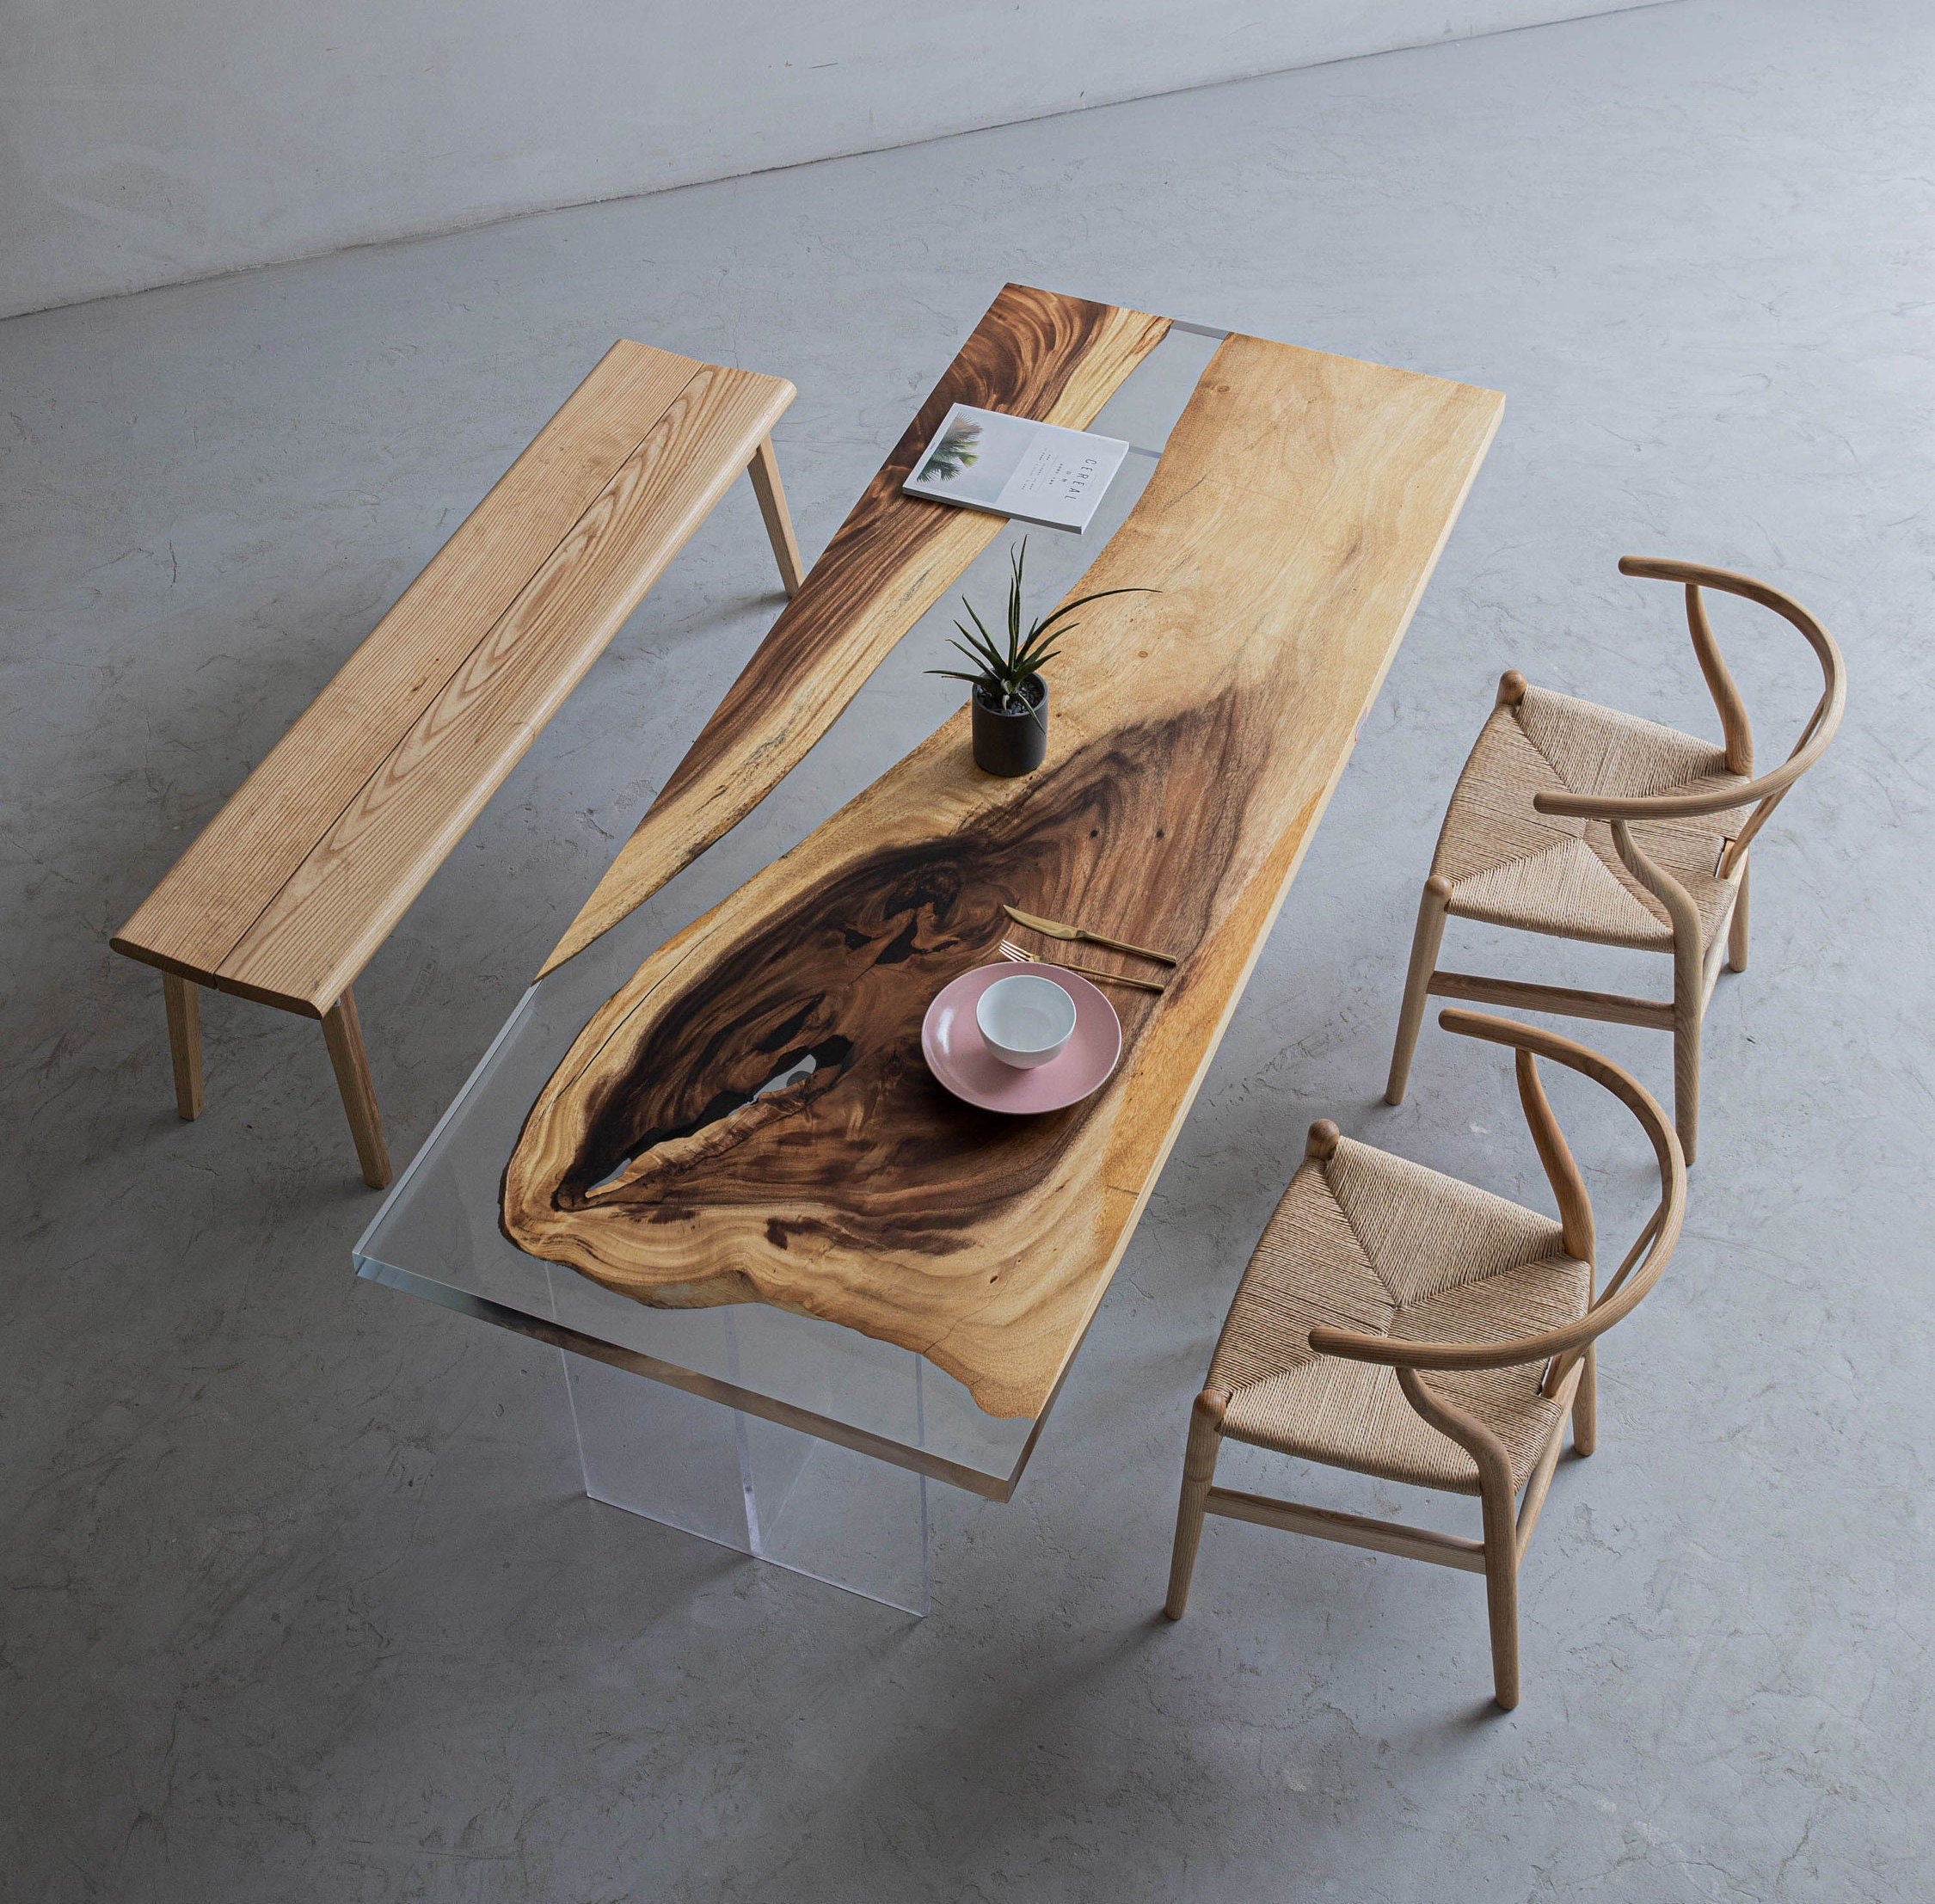 Lysfarvet epoxyharpiksbord, massivt træbord, speciel træform til valg